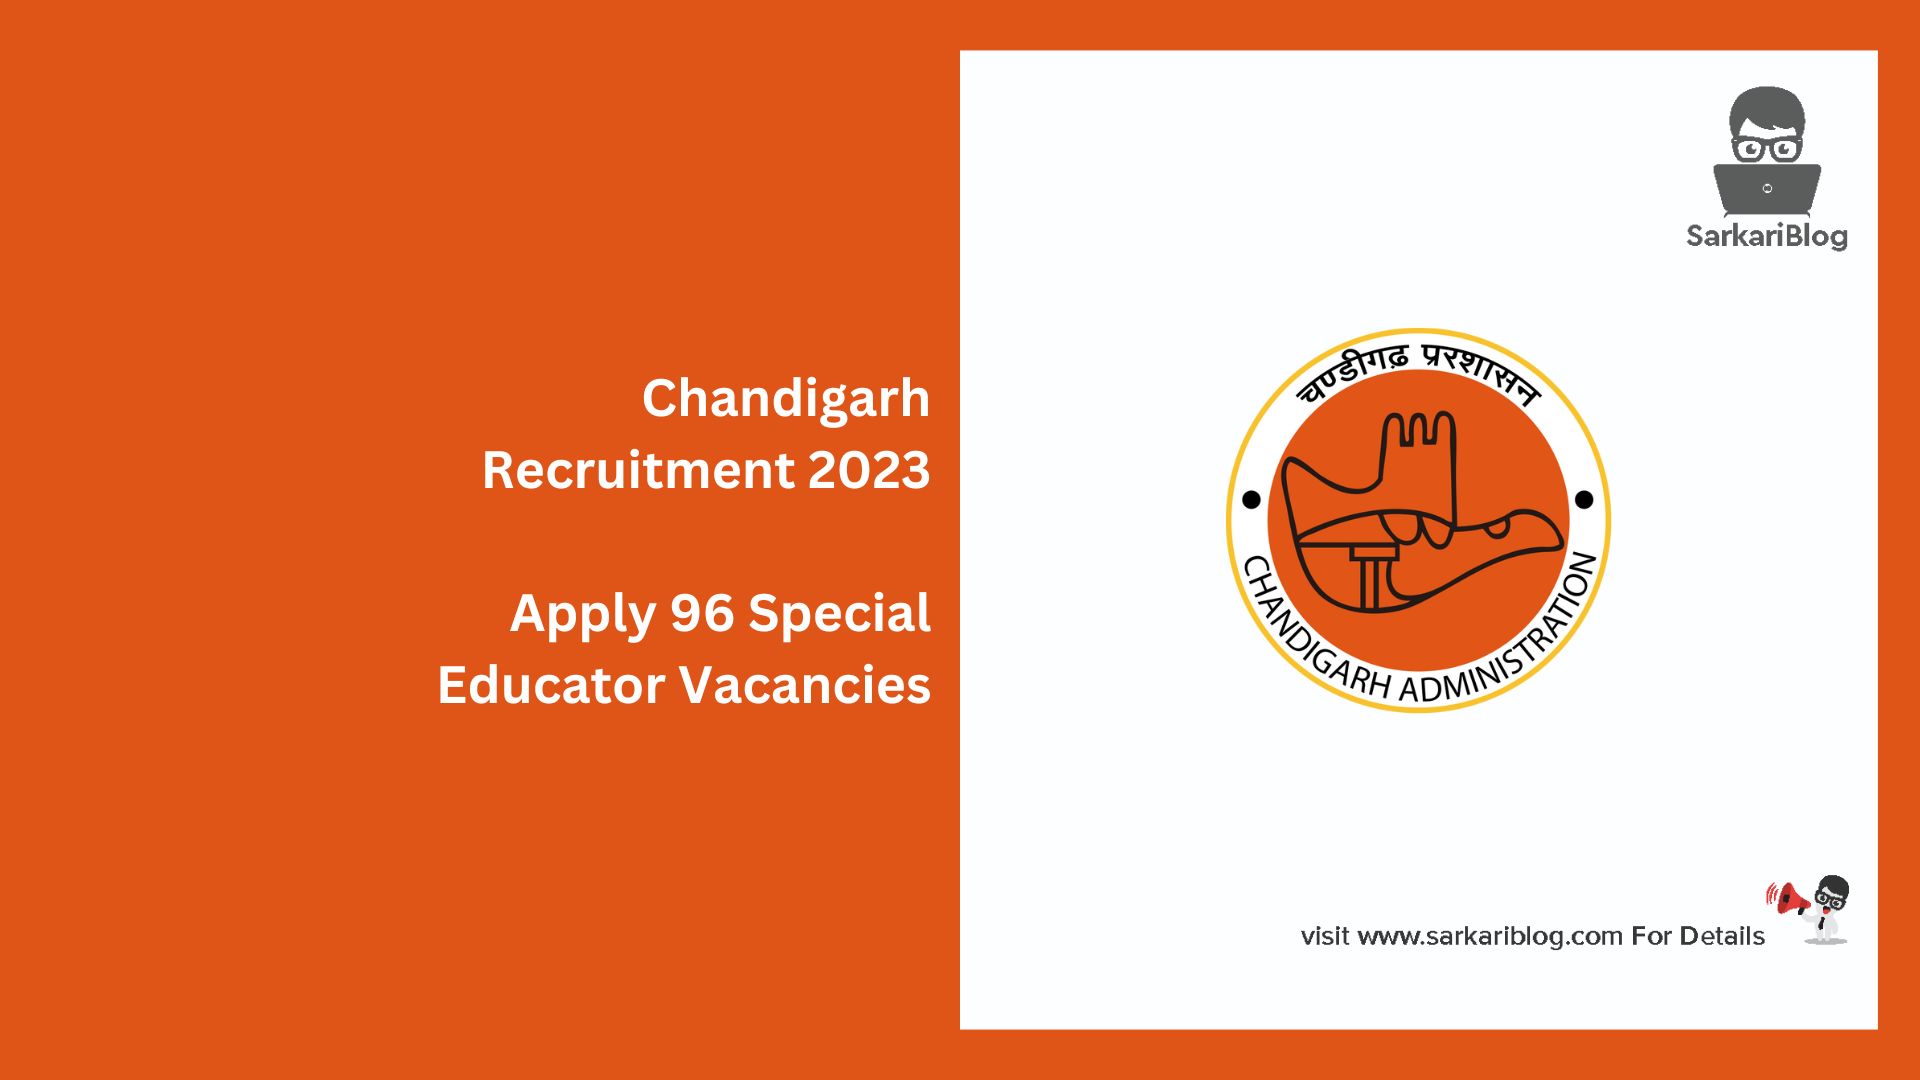 Chandigarh Recruitment 2023